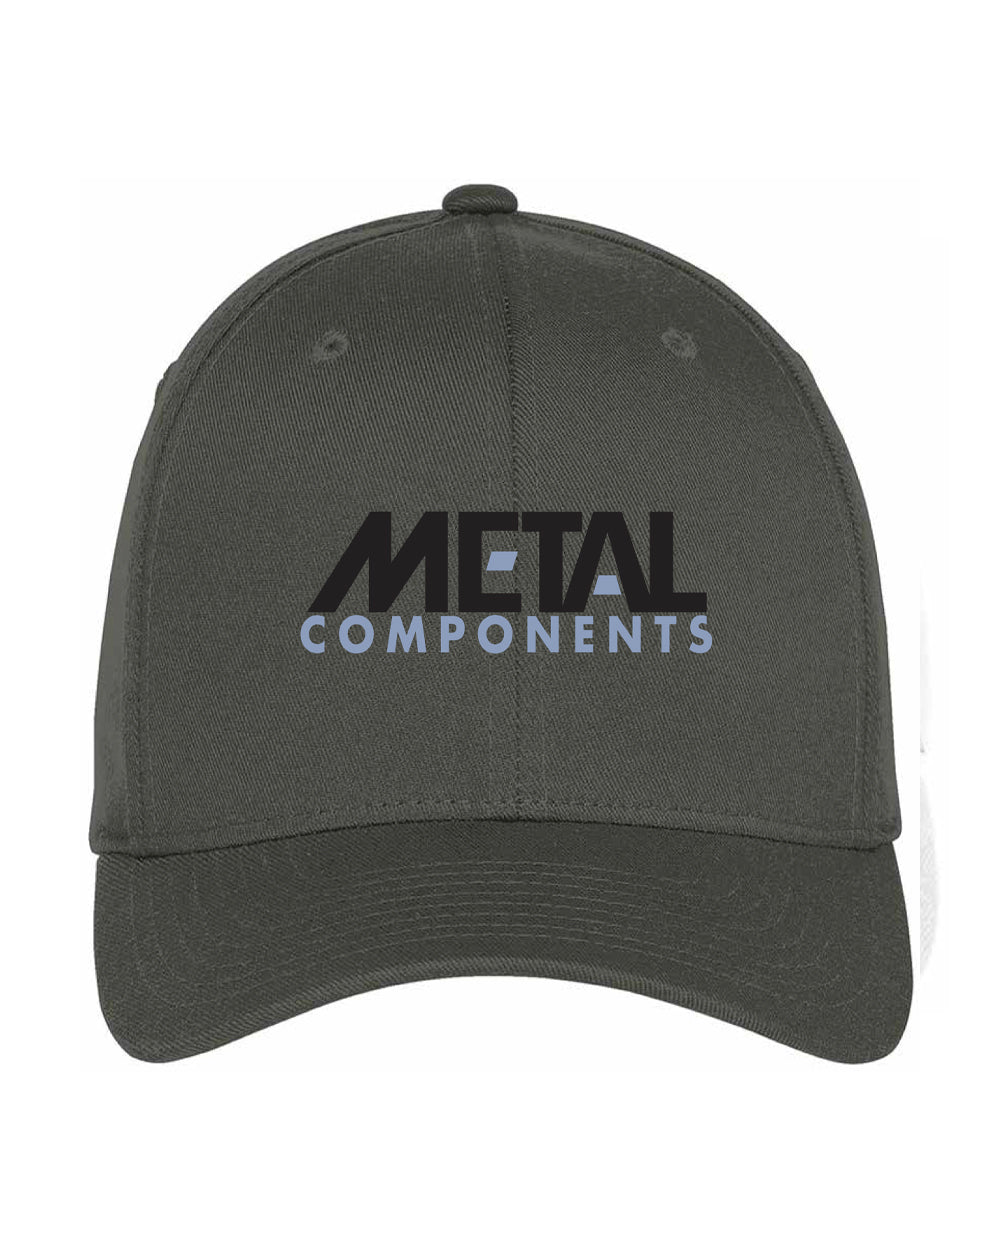 Metal Components Flexfit Hat-Grey